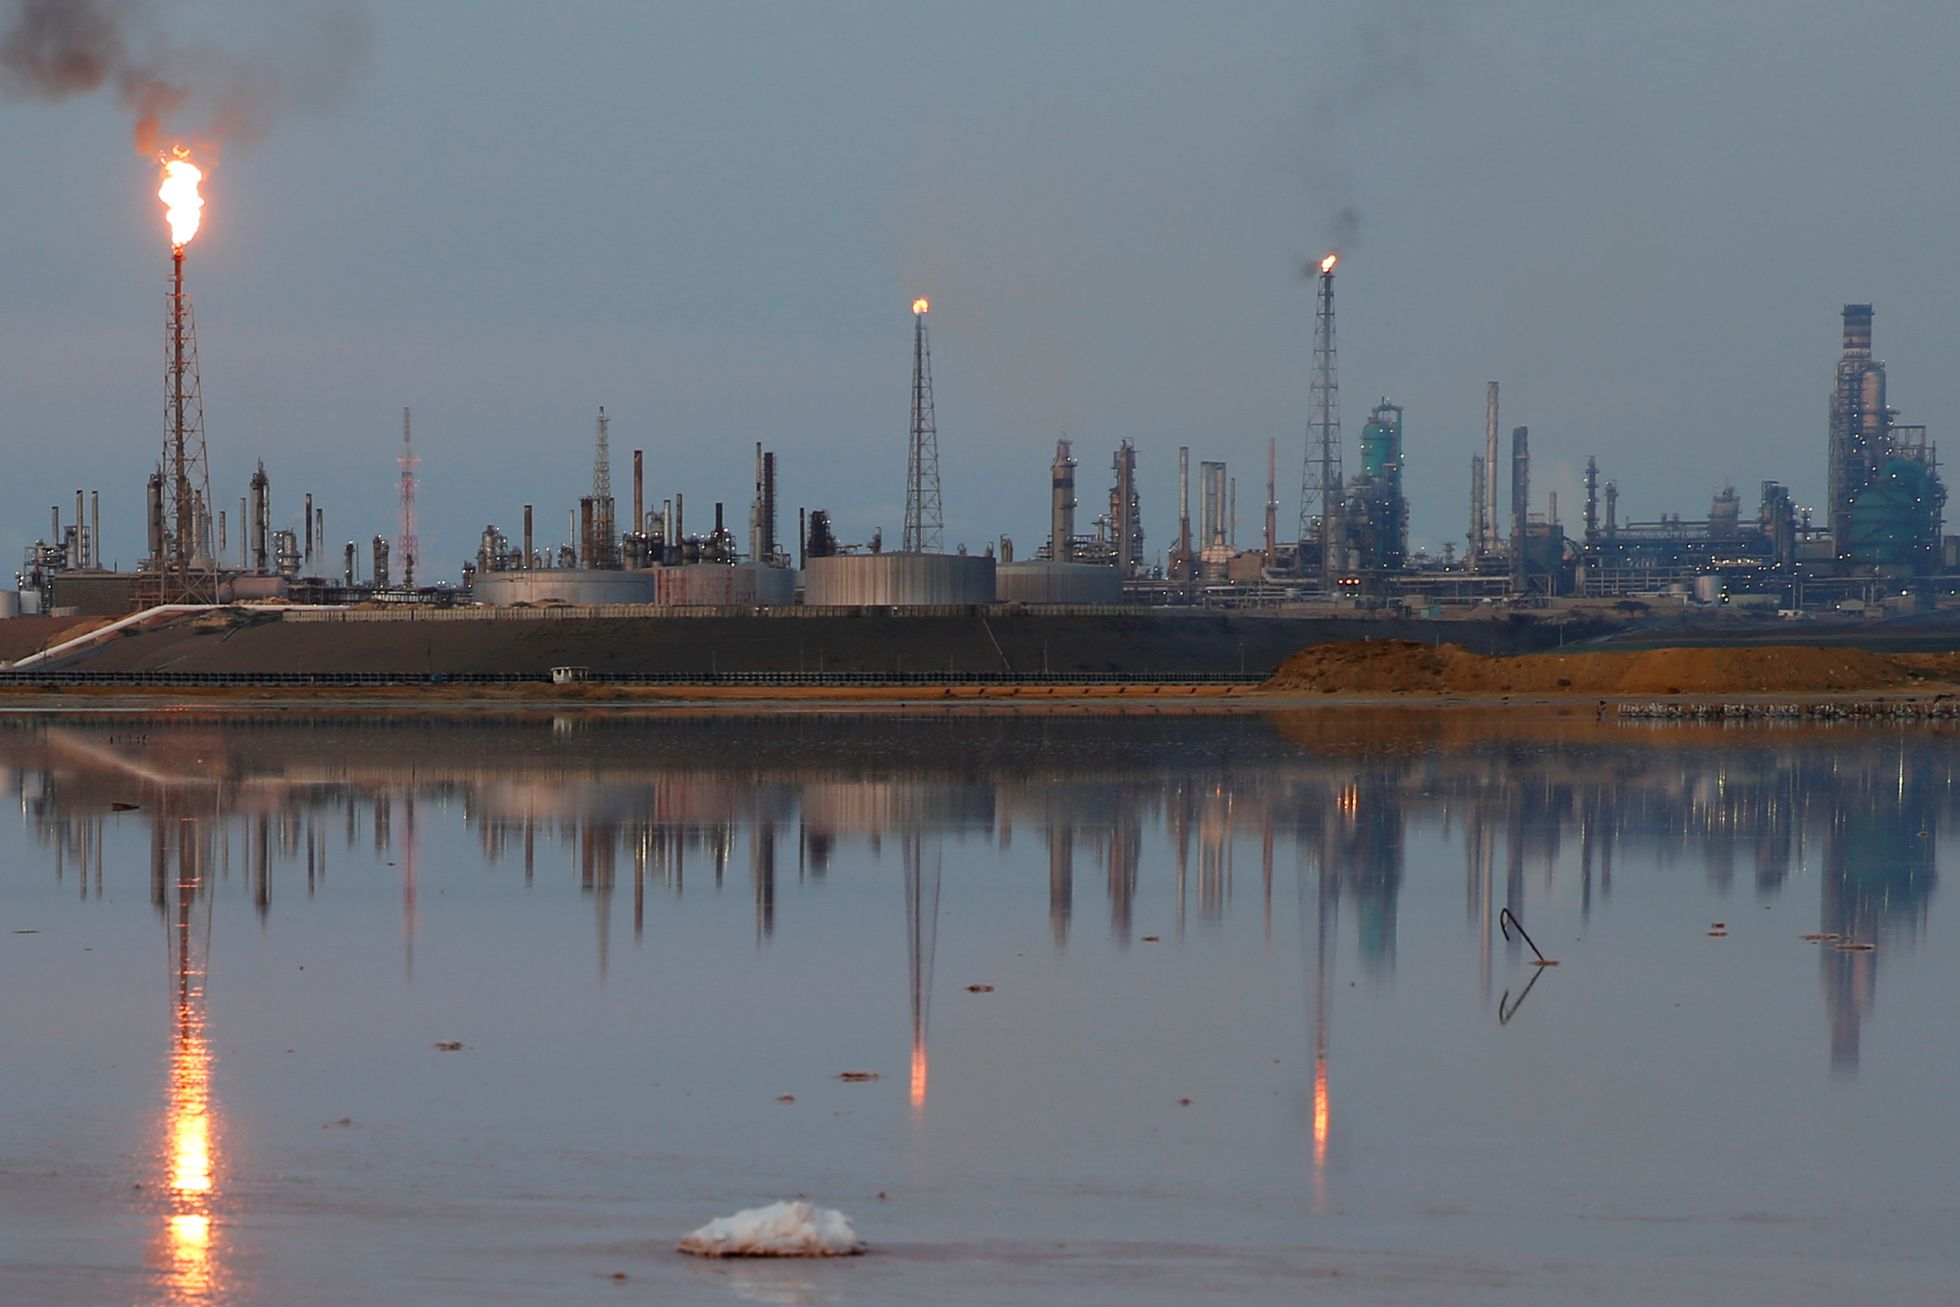 Operaciones de producción en la refinería Amuay quedan paralizadas tras nuevo apagón